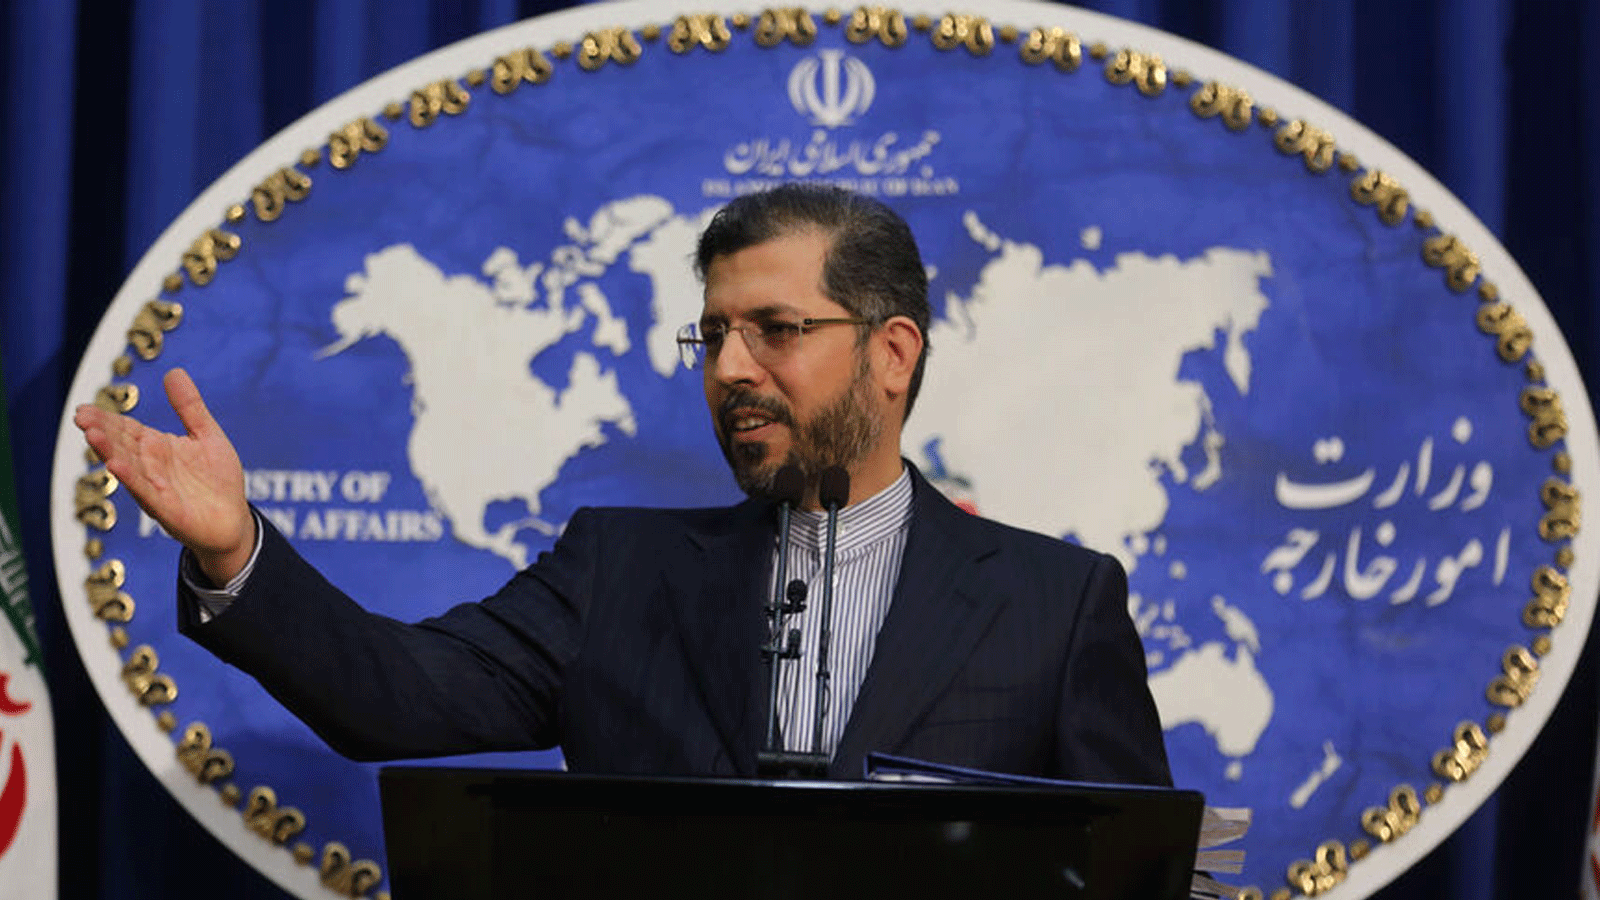 المتحدث باسم وزارة الخارجية الإيرانية سعيد خطيب زاده خلال مؤتمر صحفي في طهران. 22 شباط/ فبراير 2021